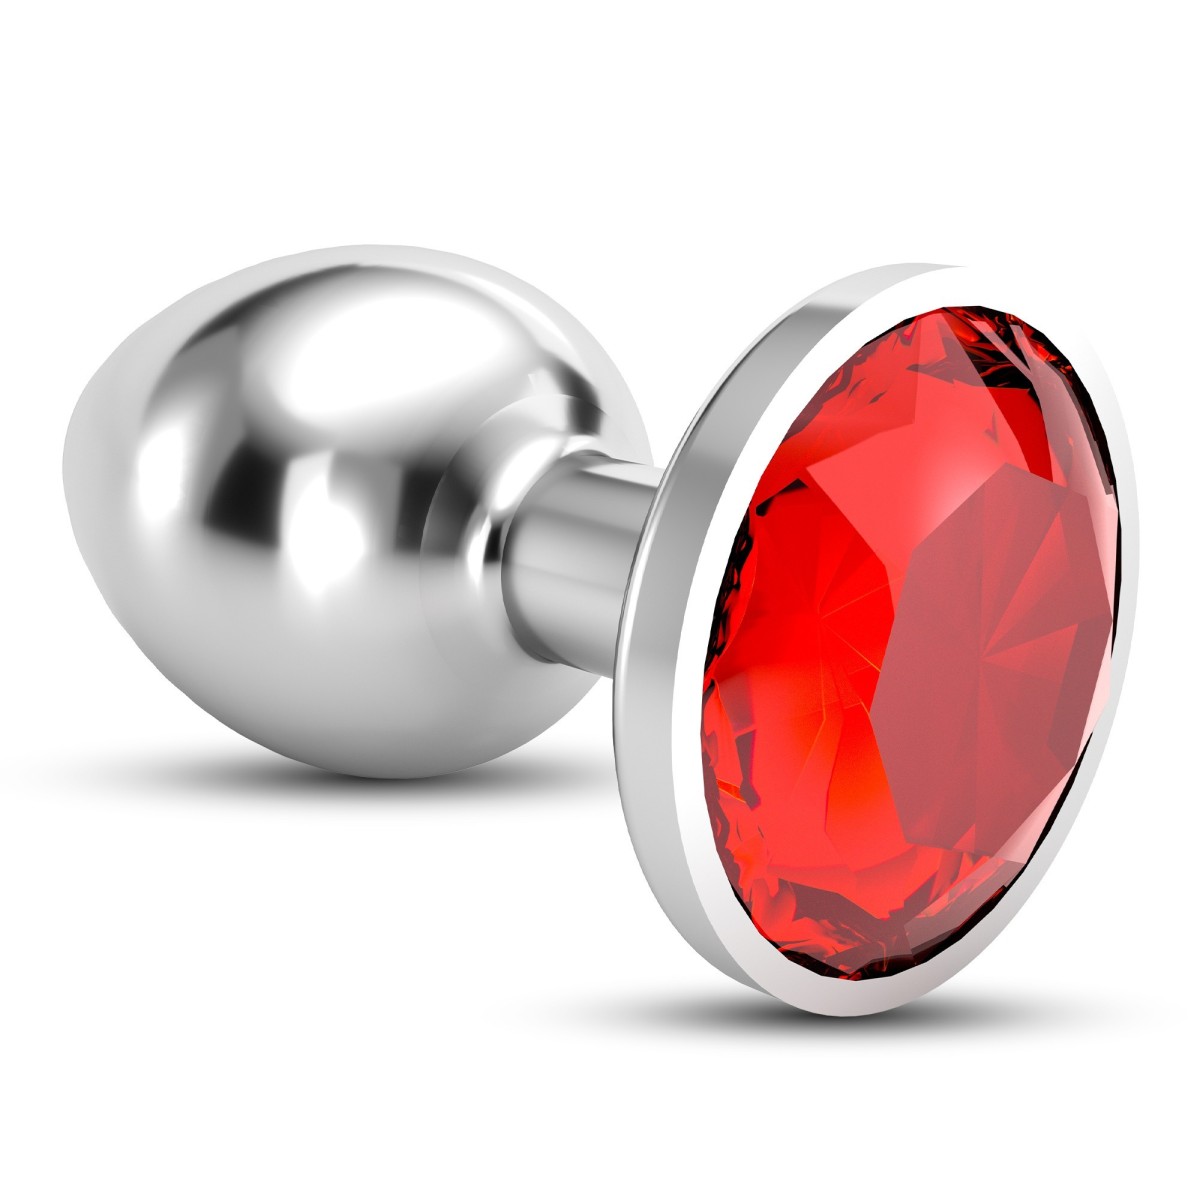 Anální šperk Crushious Bijou střední červený, kovový anální kolík 8,2 x 3,4 cm